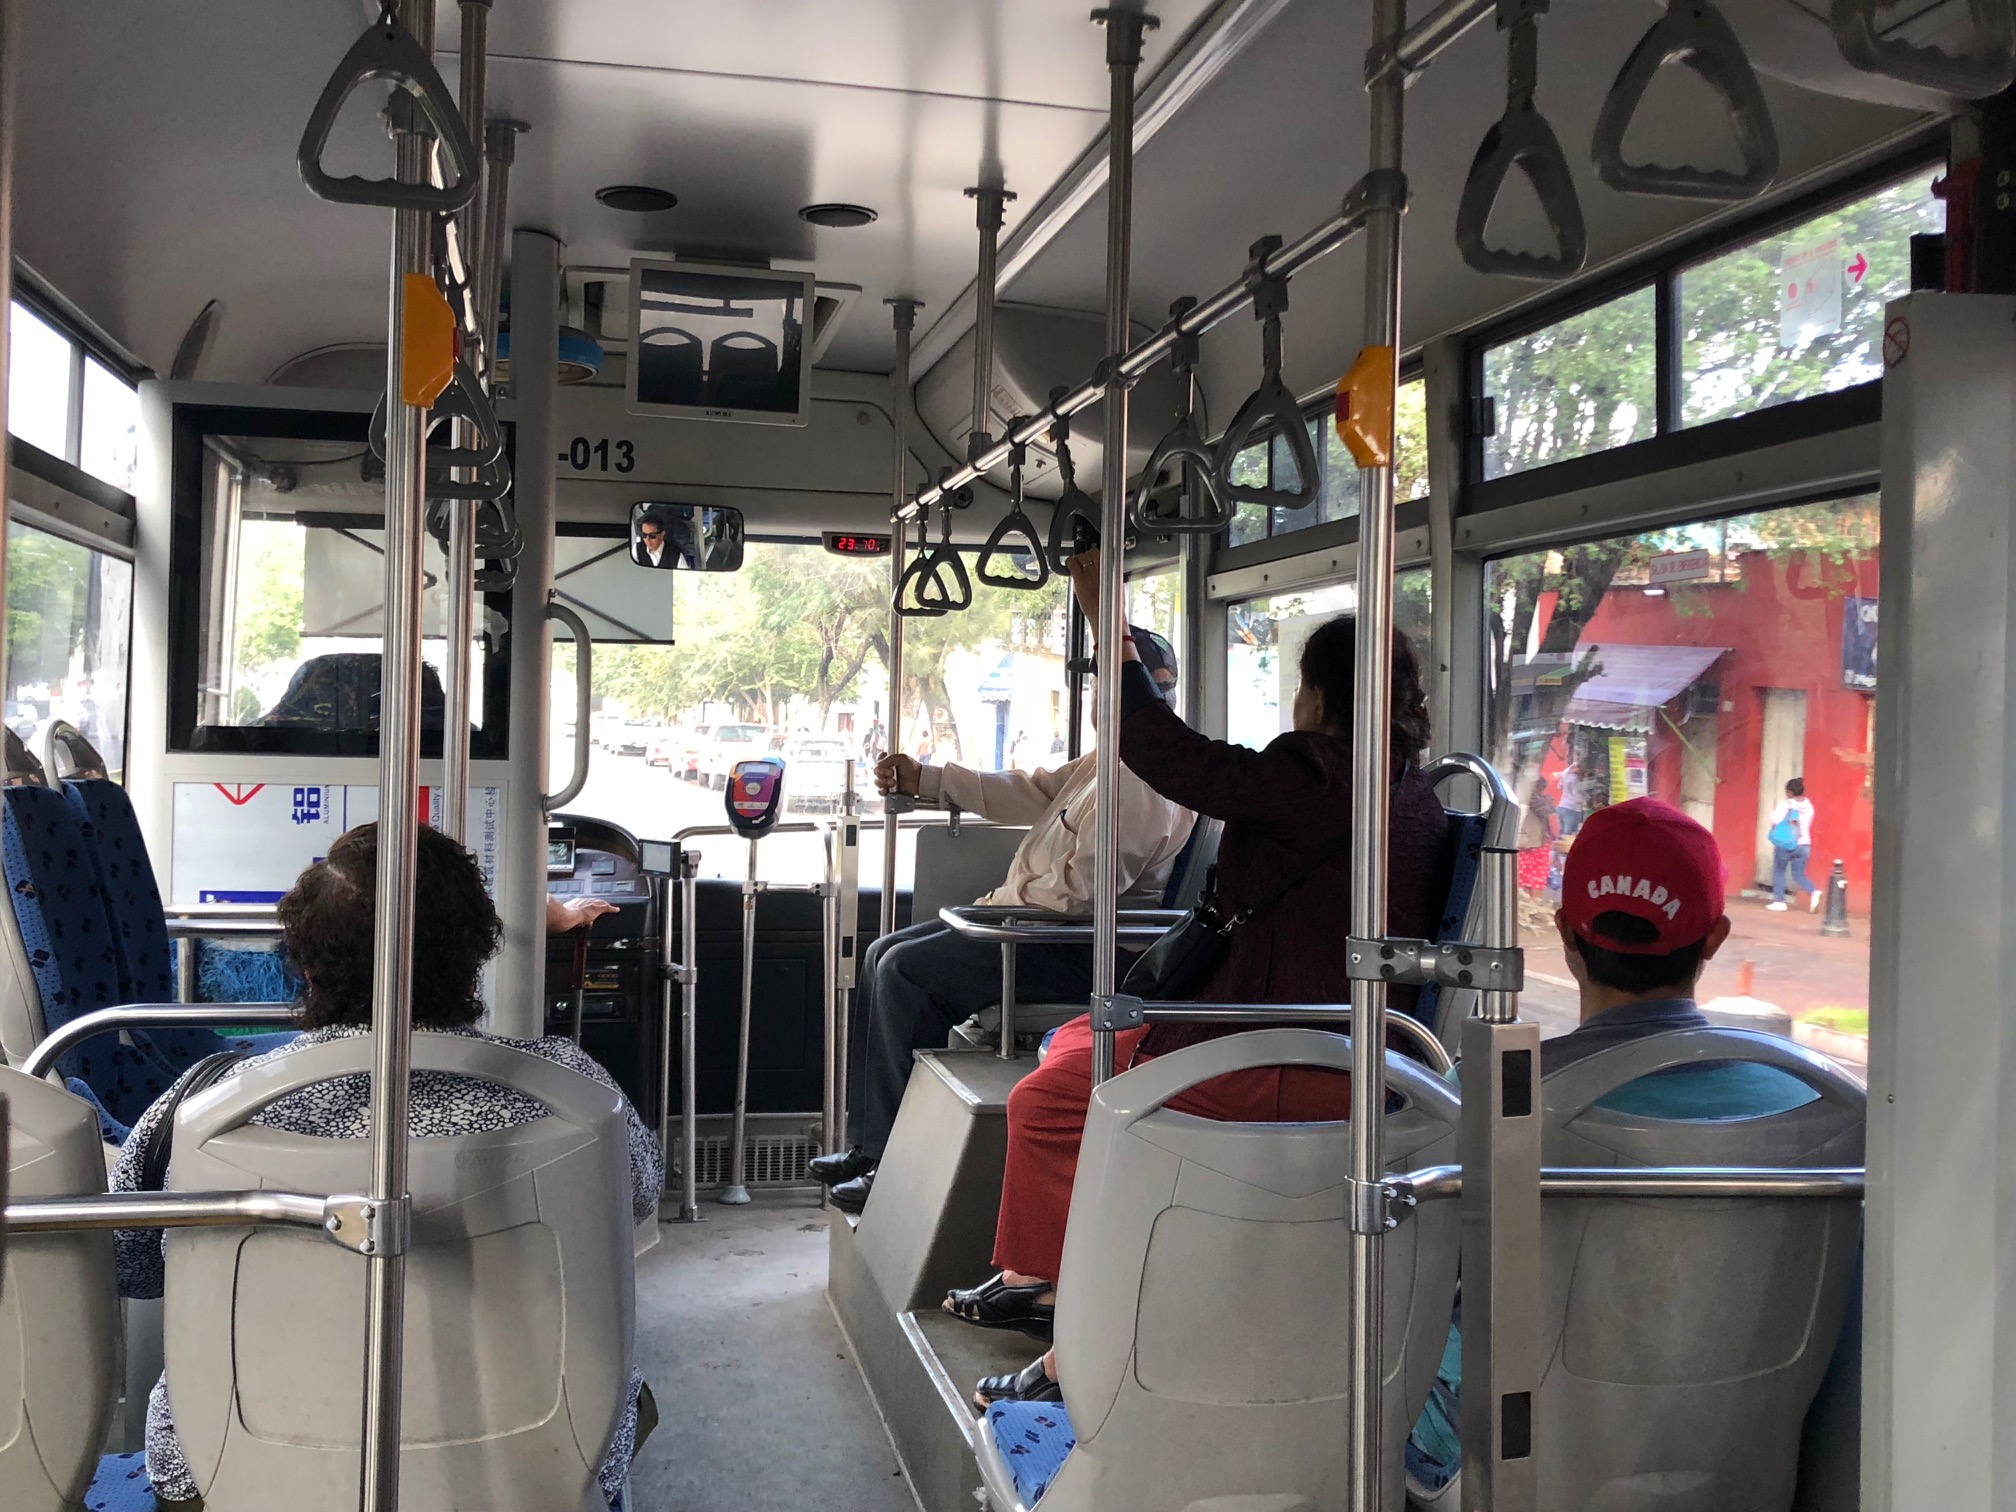  “Medidas para evitar contagios en transporte público han sido insuficientes”: Hugo Cabrera